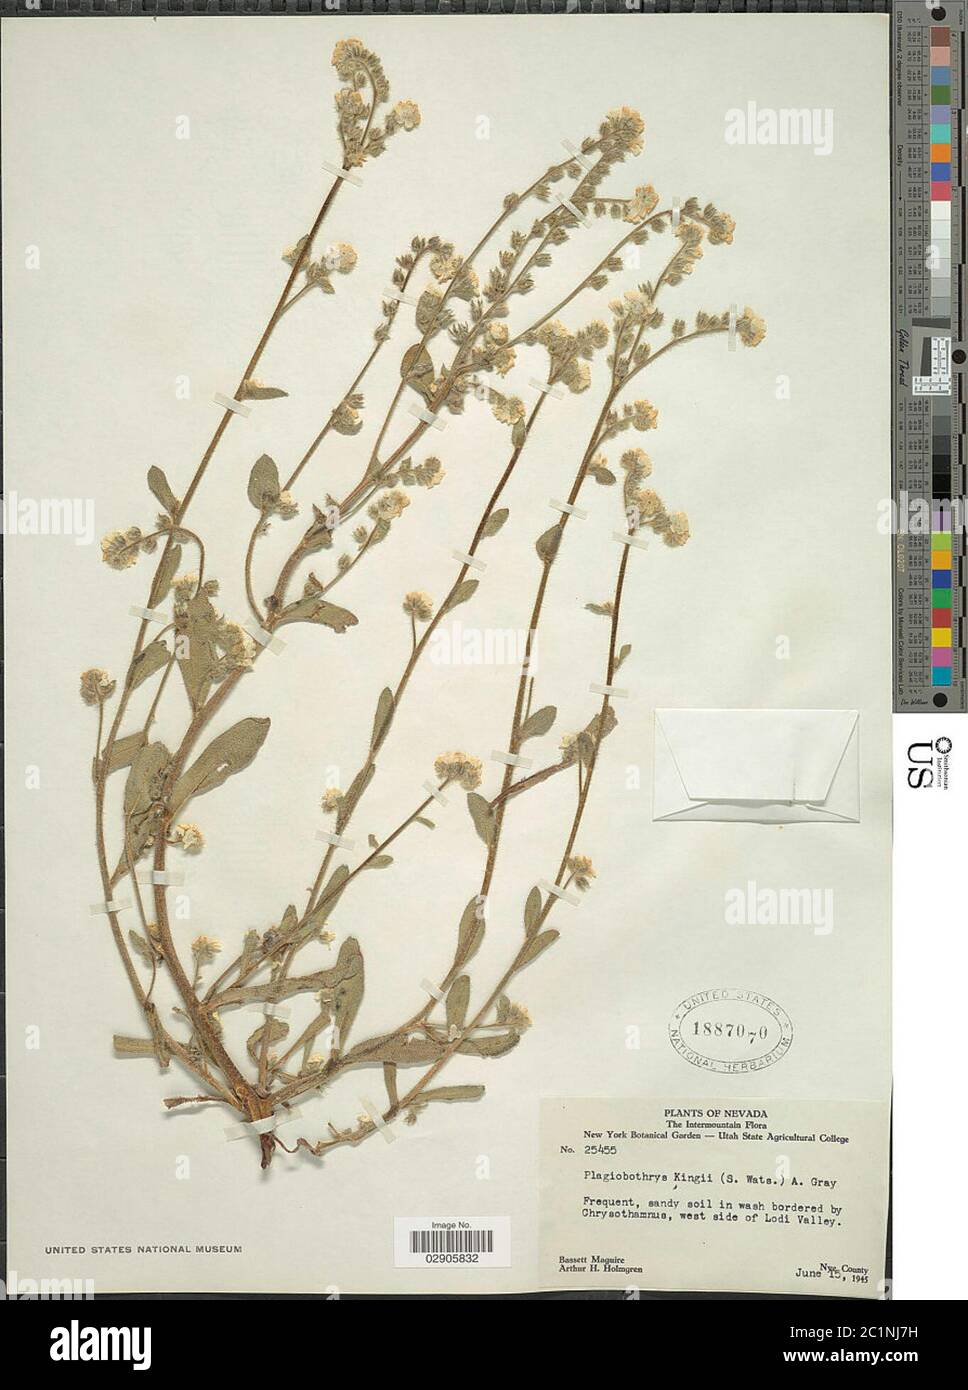 Plagiobothrys kingii S Watson A Gray Plagiobothrys kingii S Watson A Gray. Stock Photo